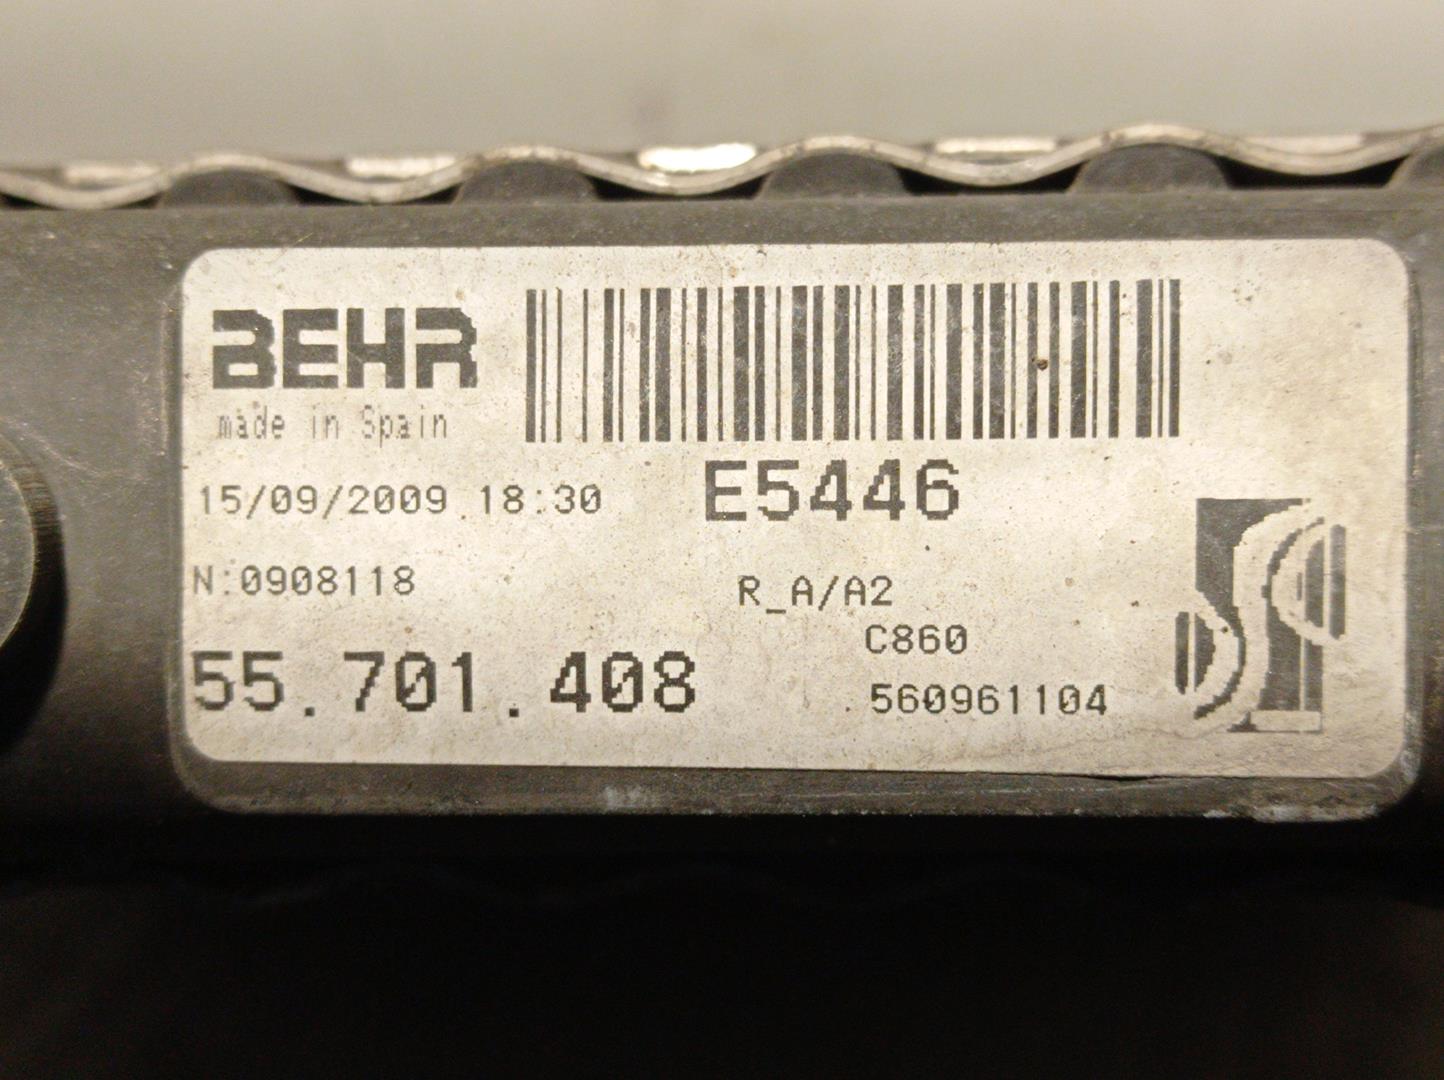 OPEL Corsa D (2006-2020) Klímahűtő 55701408, E5446, BEHR 24214026